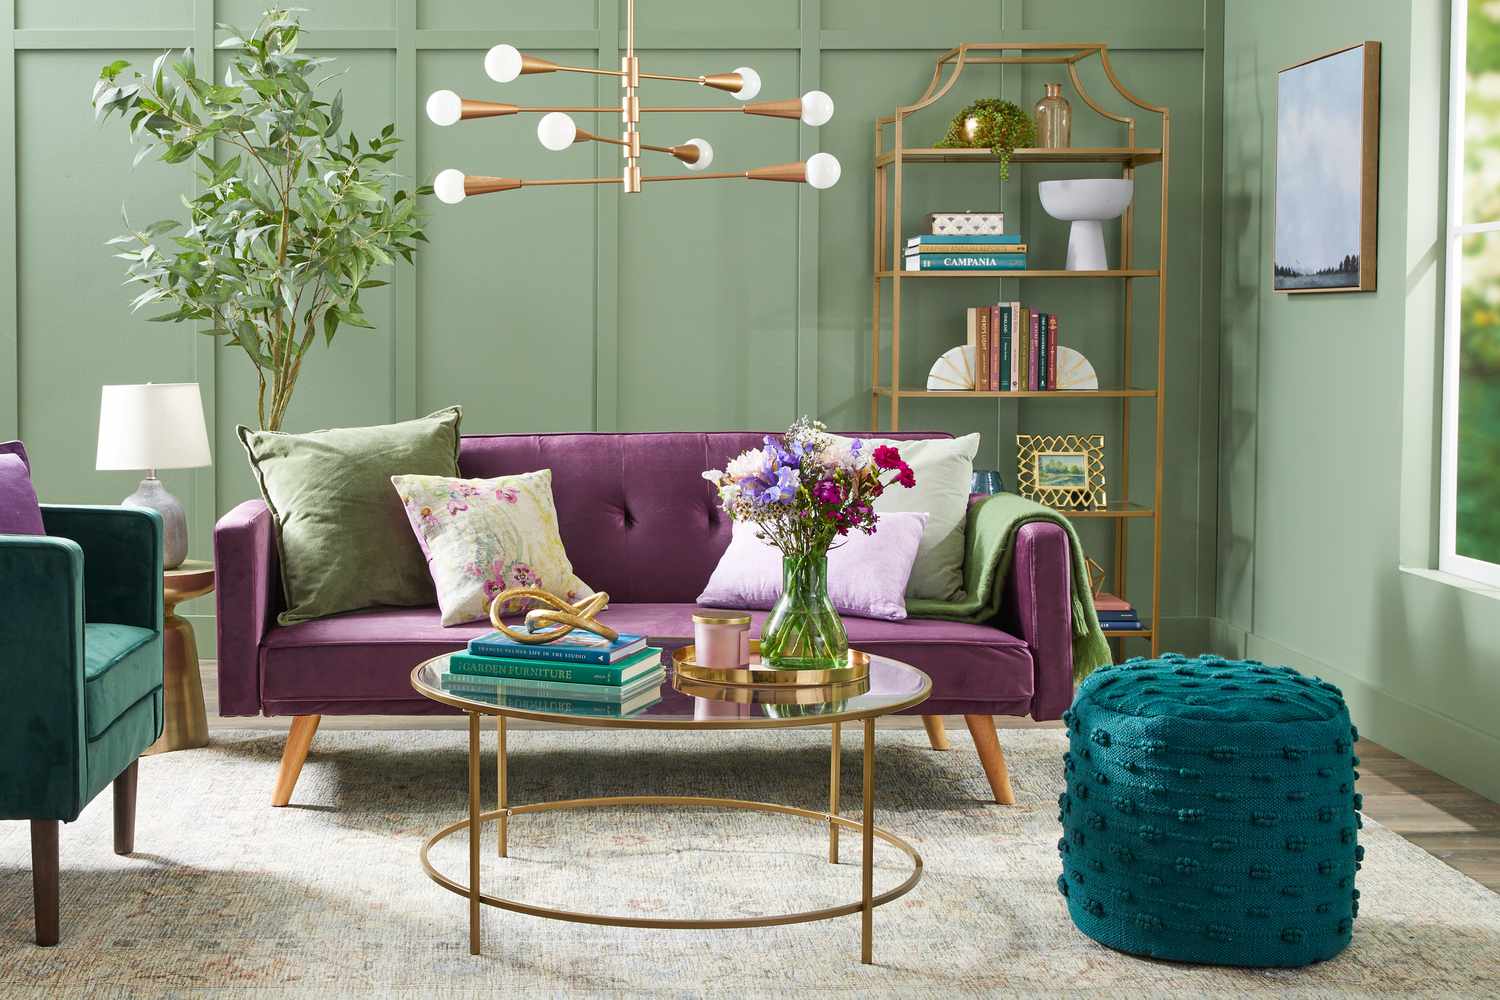 Sala verde menta com sofá roxo e pufe azul-petróleo